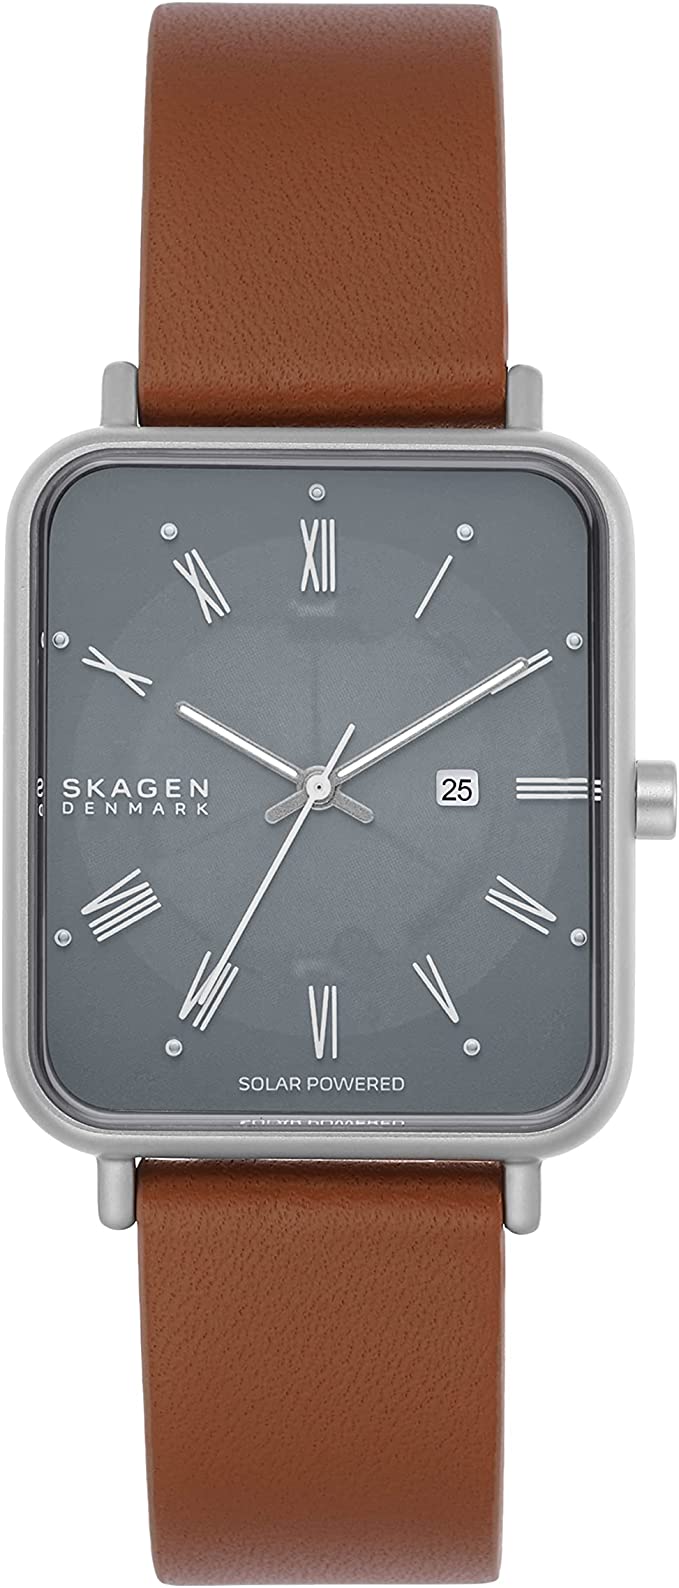 スカーゲン ビジネス腕時計 レディース スカーゲン 腕時計 レディース グレー ブラウン Ryle Solar Powered クオーツ SKAGEN SKW6847